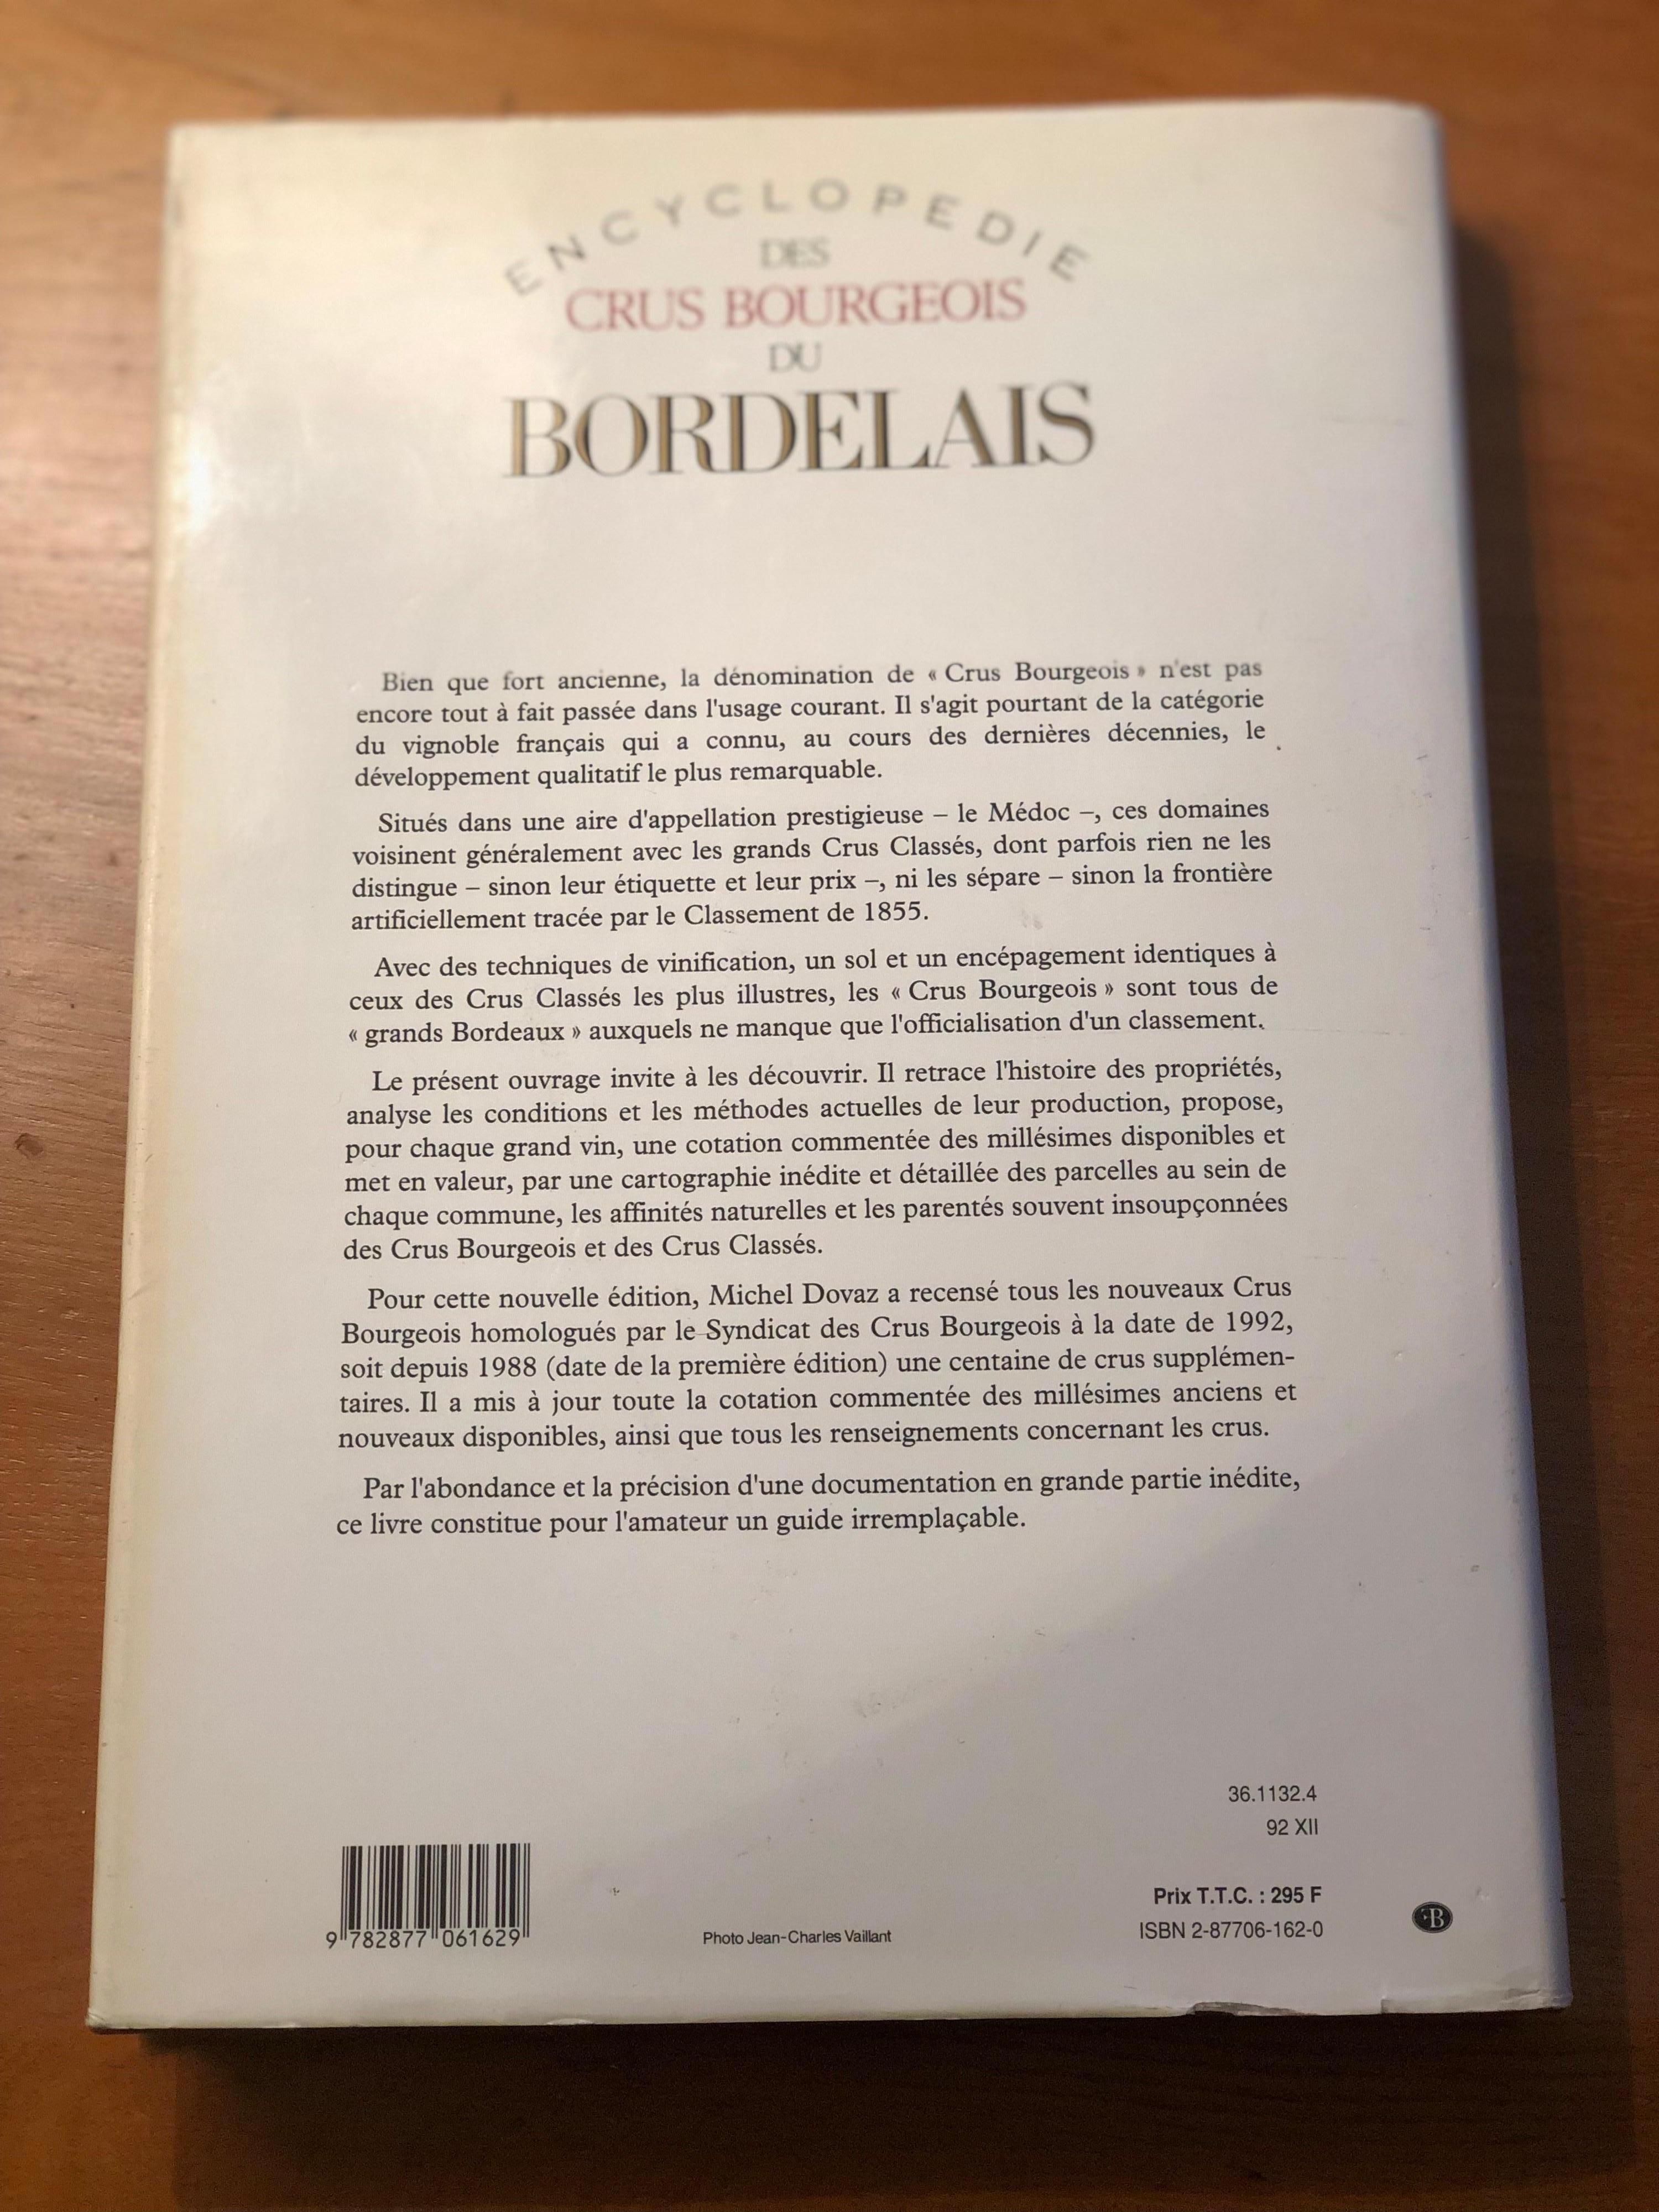 Encyclopedie Des Crus Bourgeois Du Bordelais 1988-1992 by Michel Dovaz 1